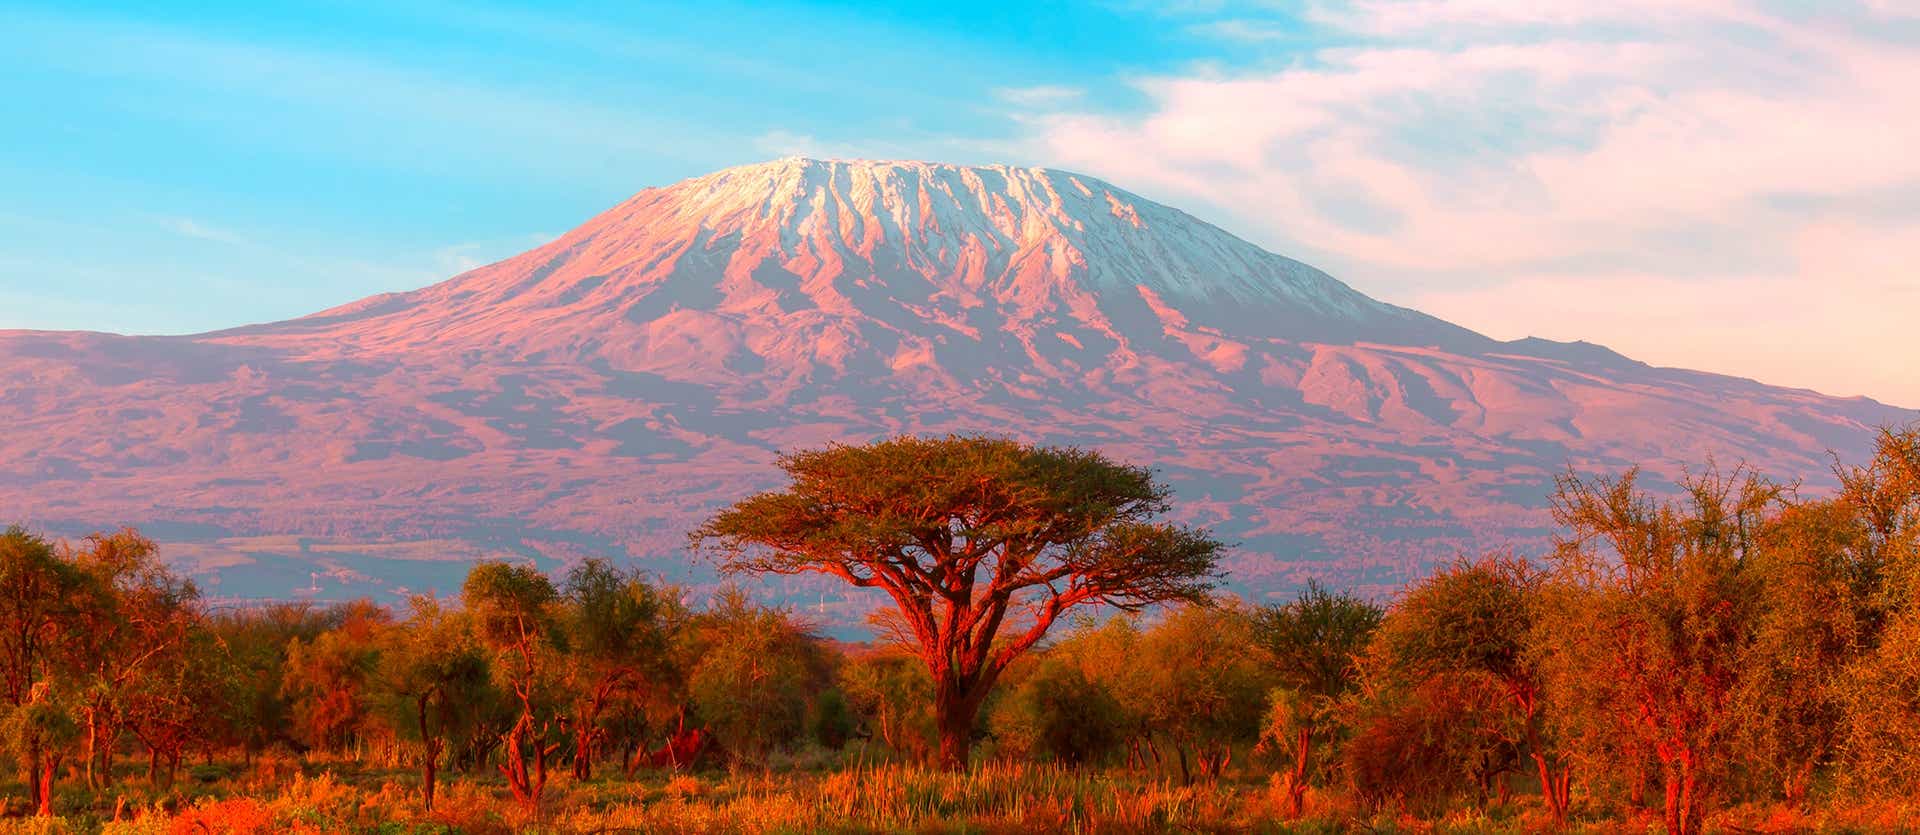 Mount Kilimanjaro <span class="iconos separador"></span> Amboseli National Park